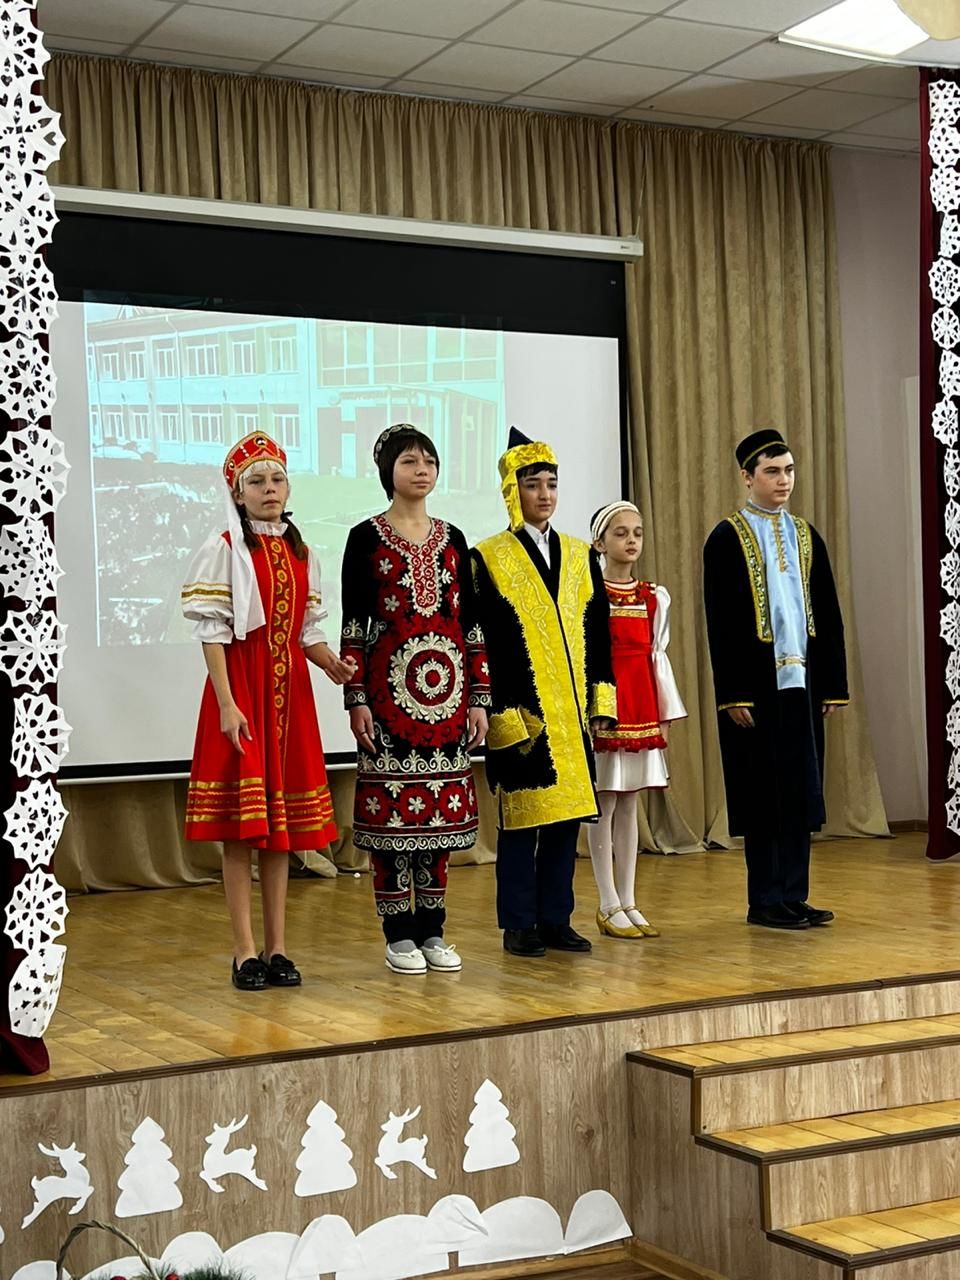 Сокуровская средняя школа выиграла и реализовала грант в рамках Года родных языков и народного единства